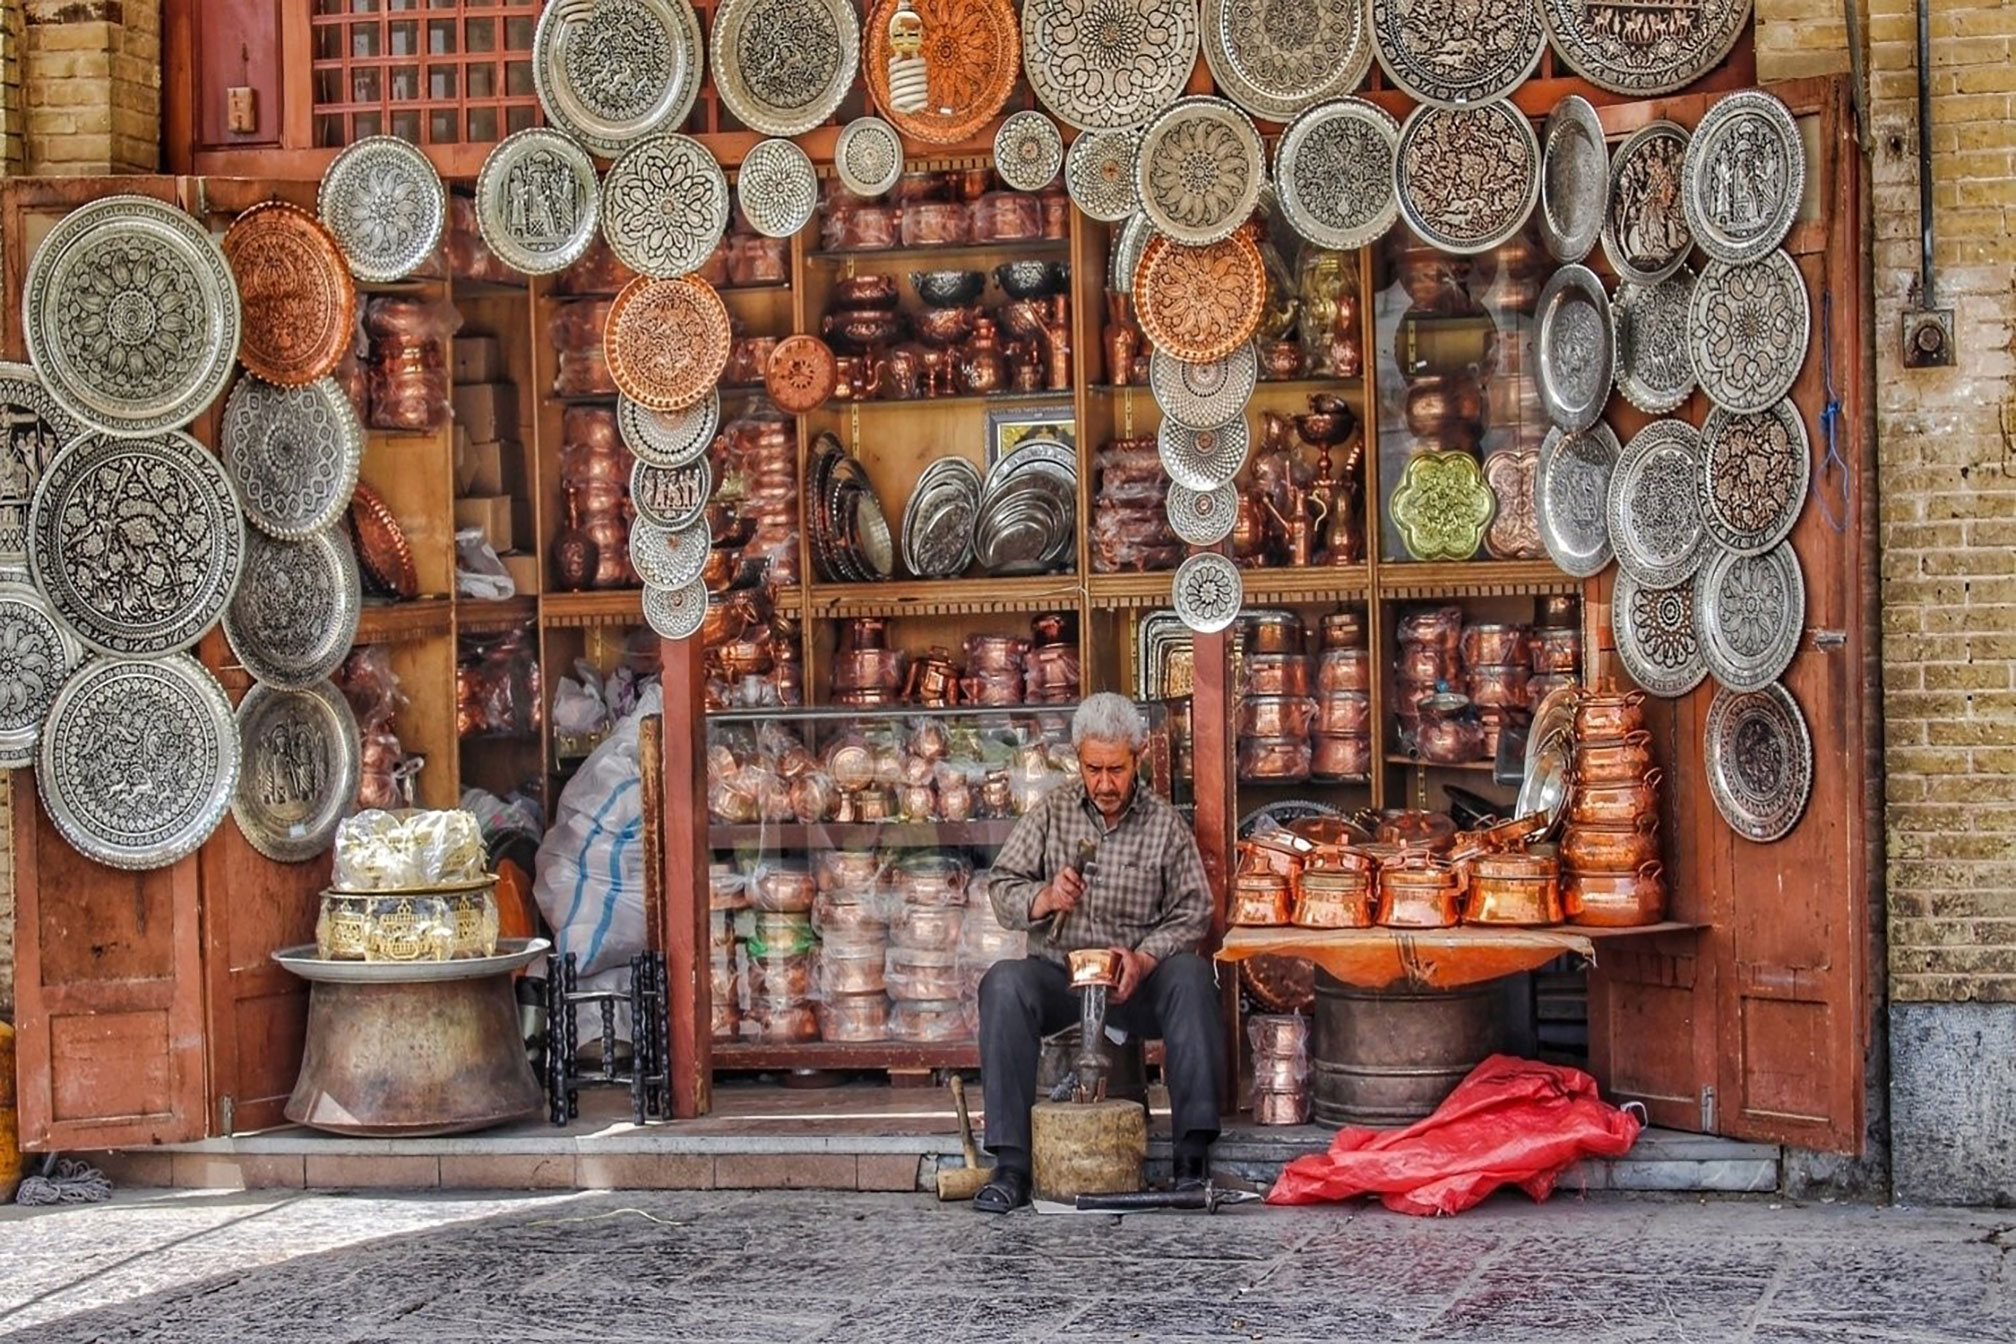 Craftsman in NaqsheJahan - The history of bazaars in Iran